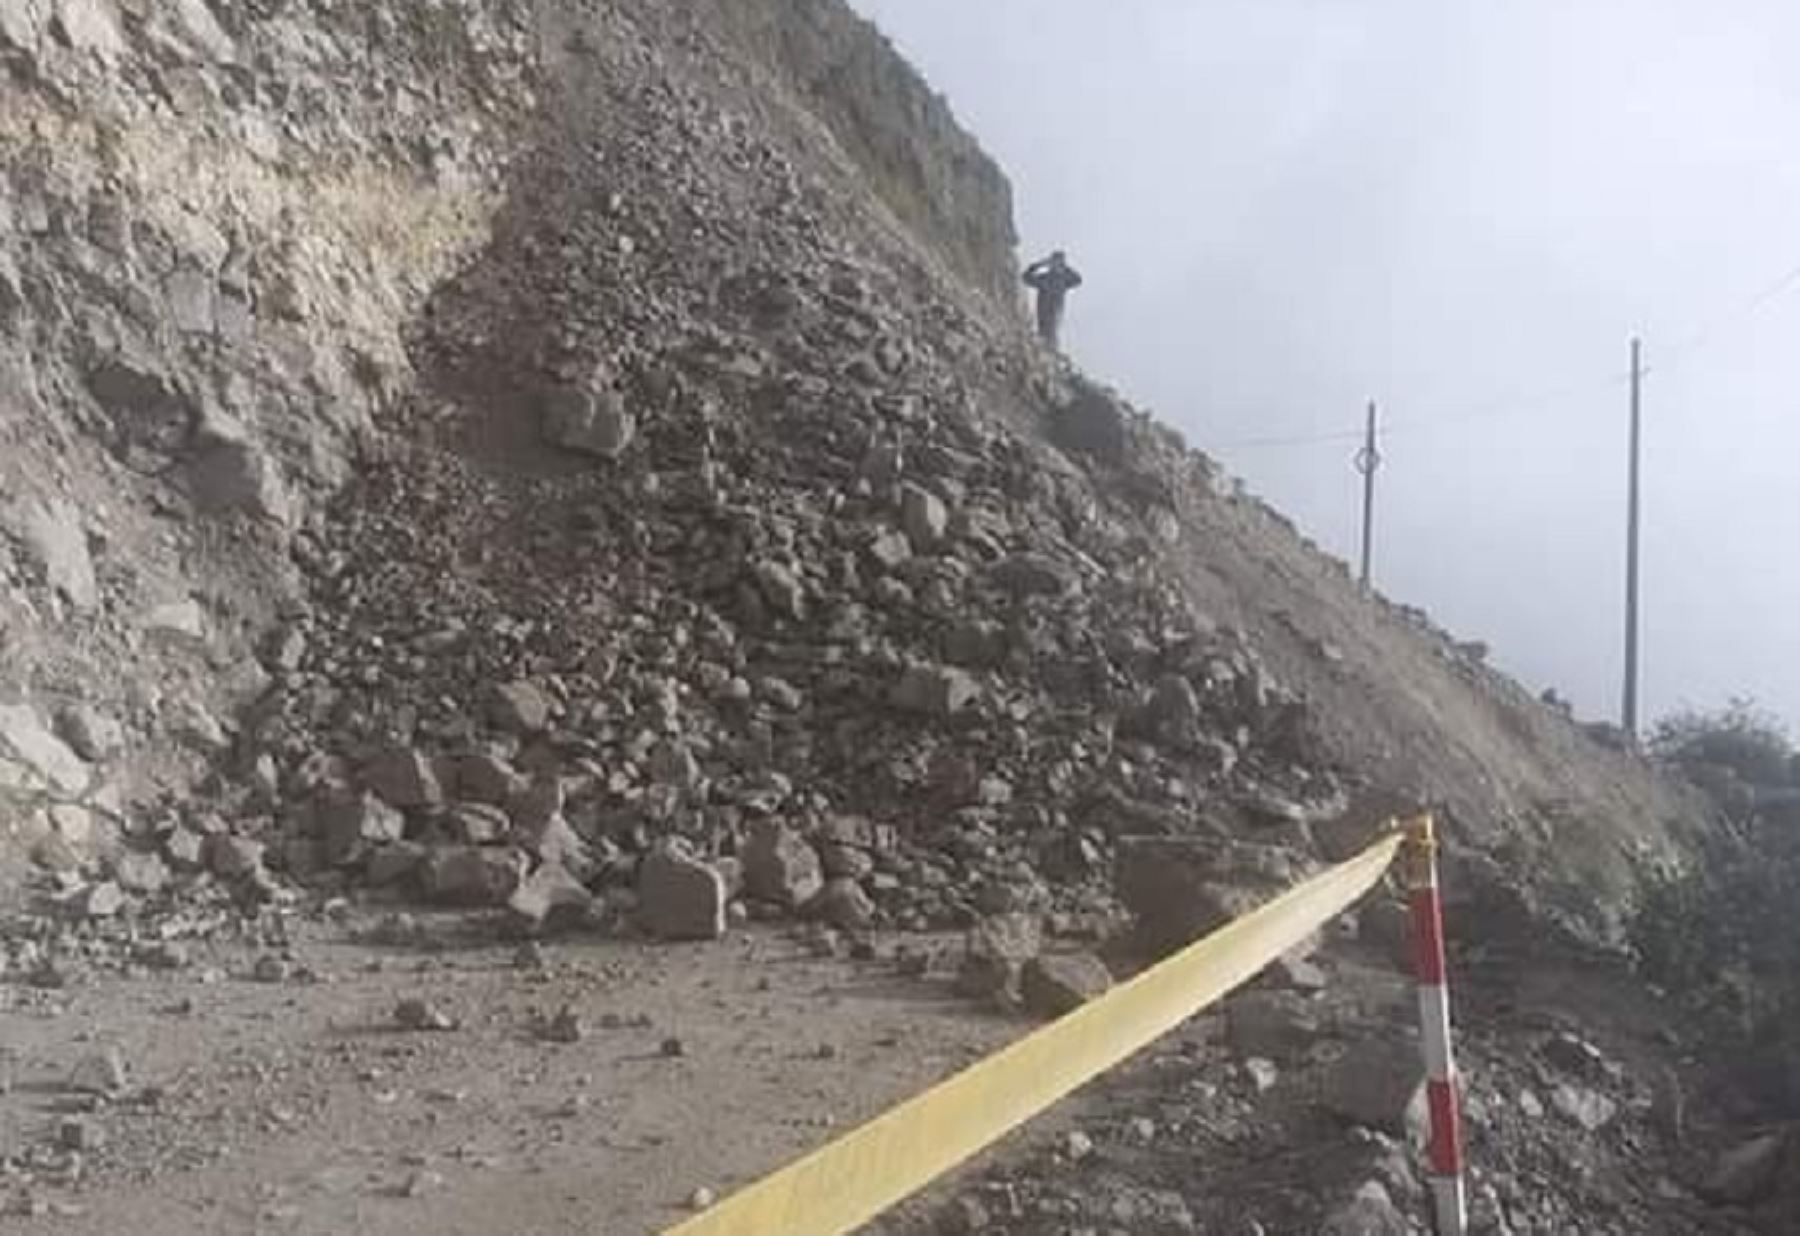 Lluvias intensas registradas en los últimos días provocaron el derrumbe de un cerro que bloqueó la vía departamental AN-112, en el tramo Conococha-Ticllos, sector Pogroroche, ubicado en el distrito de Ticllos, provincia de Bolognesi, informó el Centro de Operaciones de Emergencia Regional (COER) de Áncash.